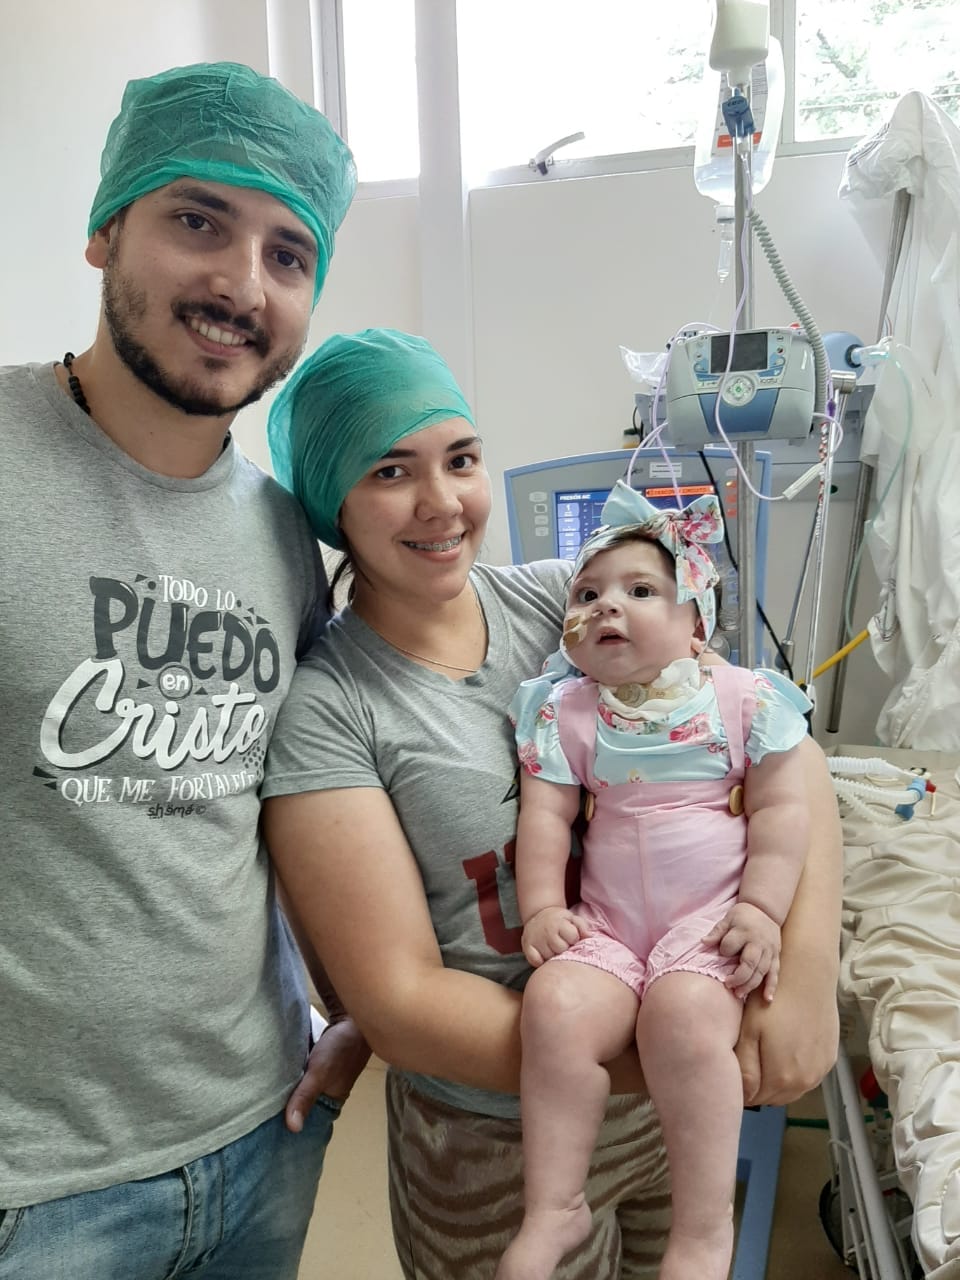 José y Tania, padres de Bianca, realizan la campaña para lograr los 2 millones de dólares necesarios para acceder a la cura definitiva. Foto: Todos somos Bianca (Facebook).